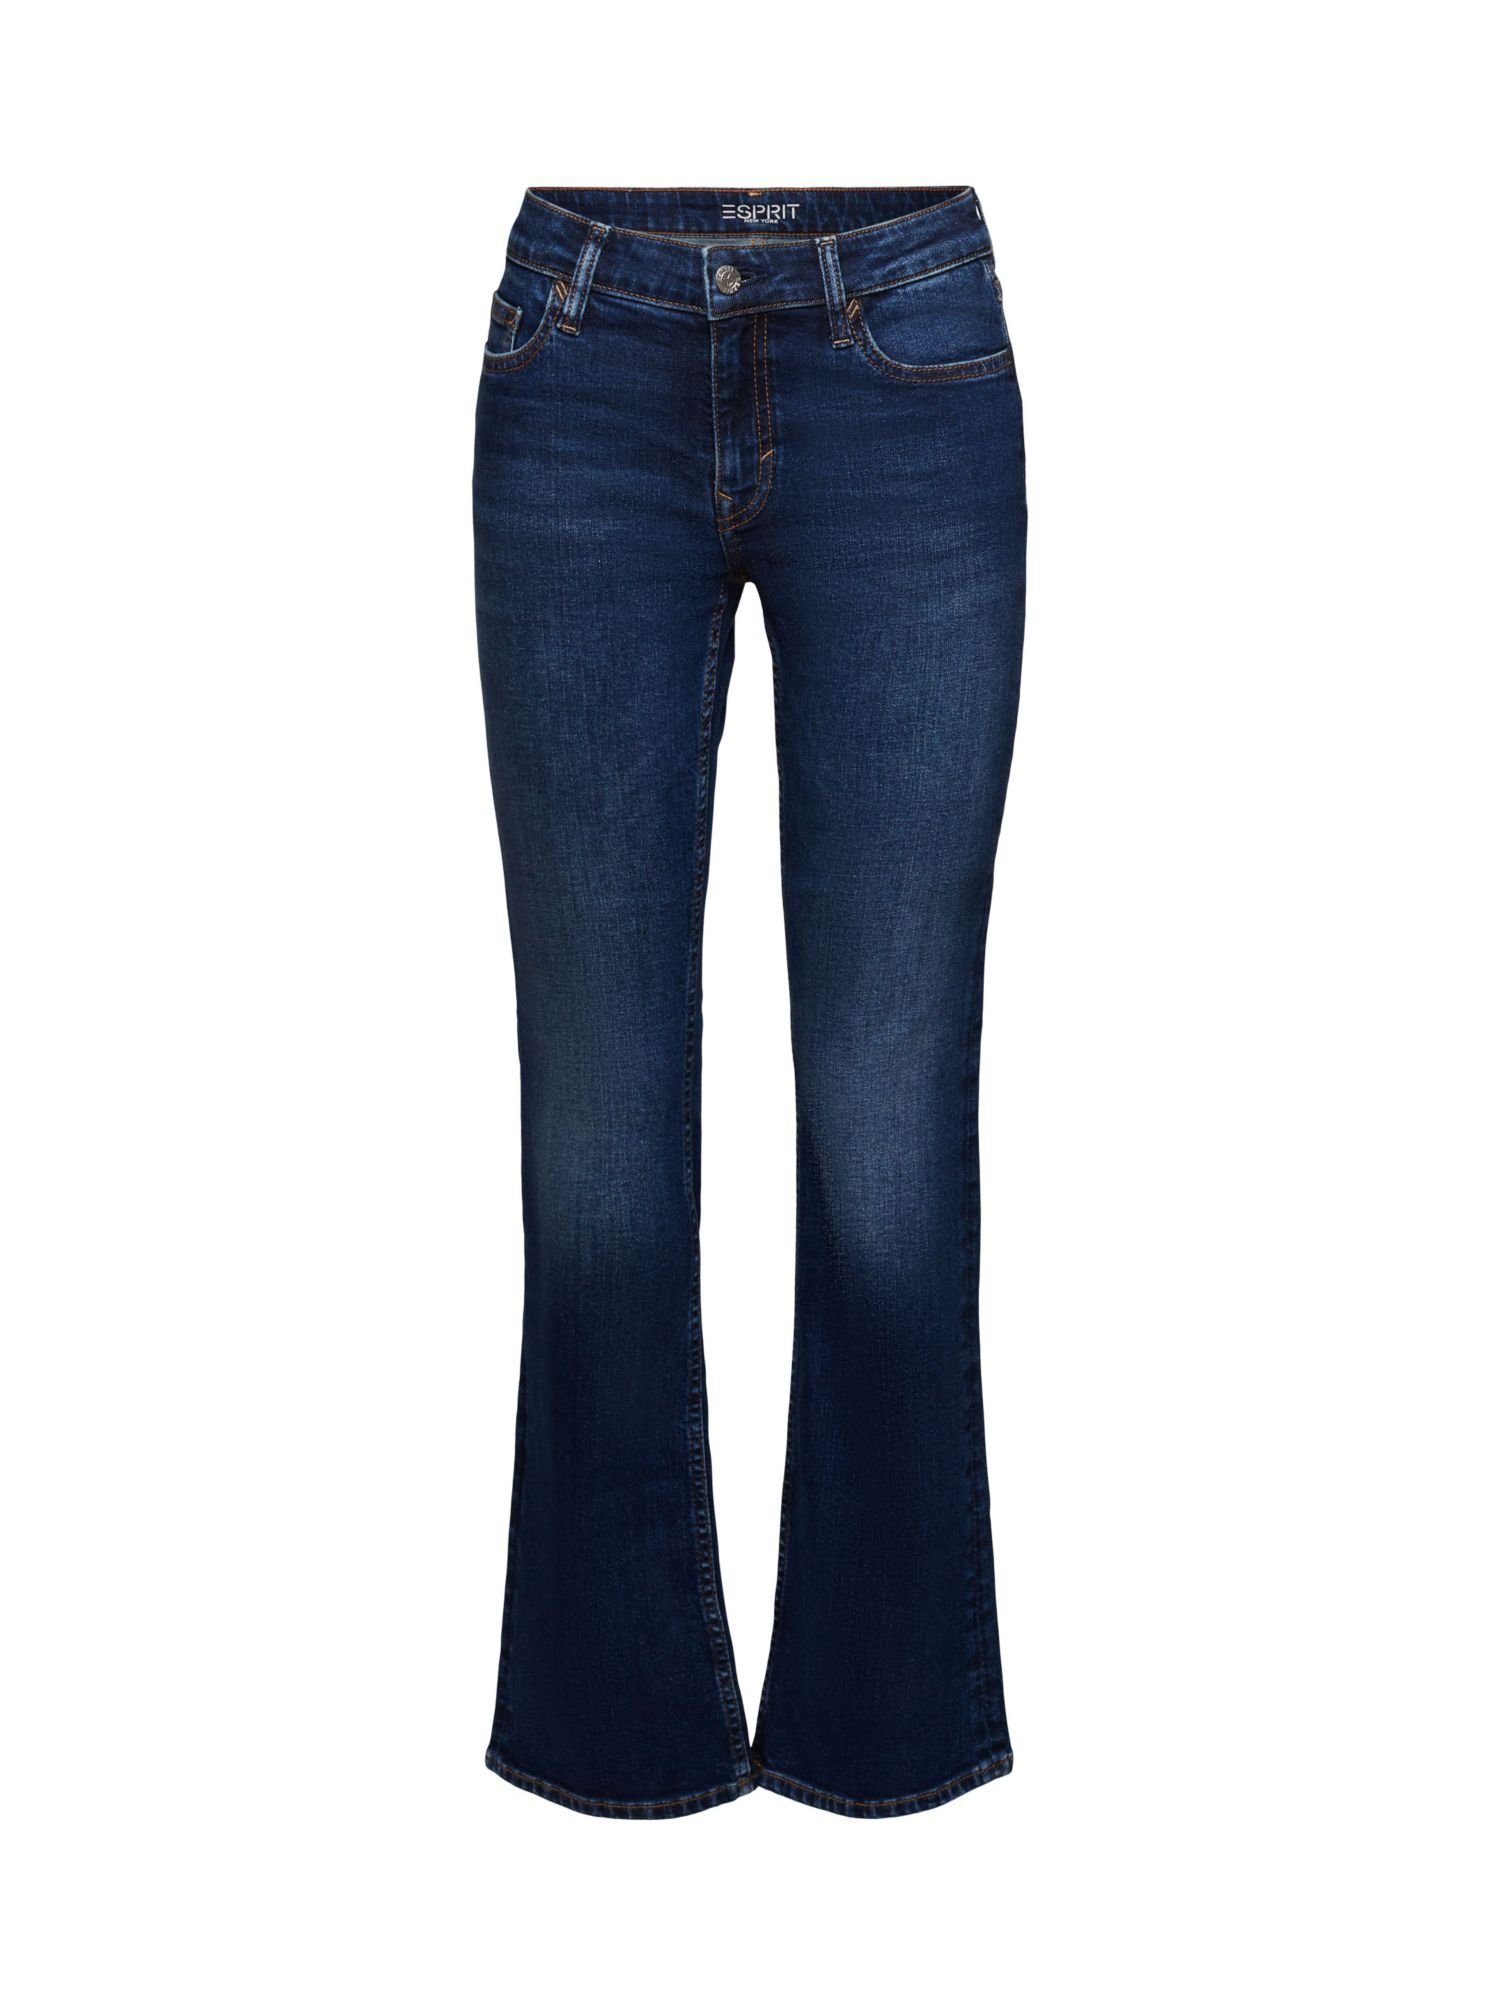 Esprit Bootcut Bootcut-Jeans Jeans mit Bund mittelhohem